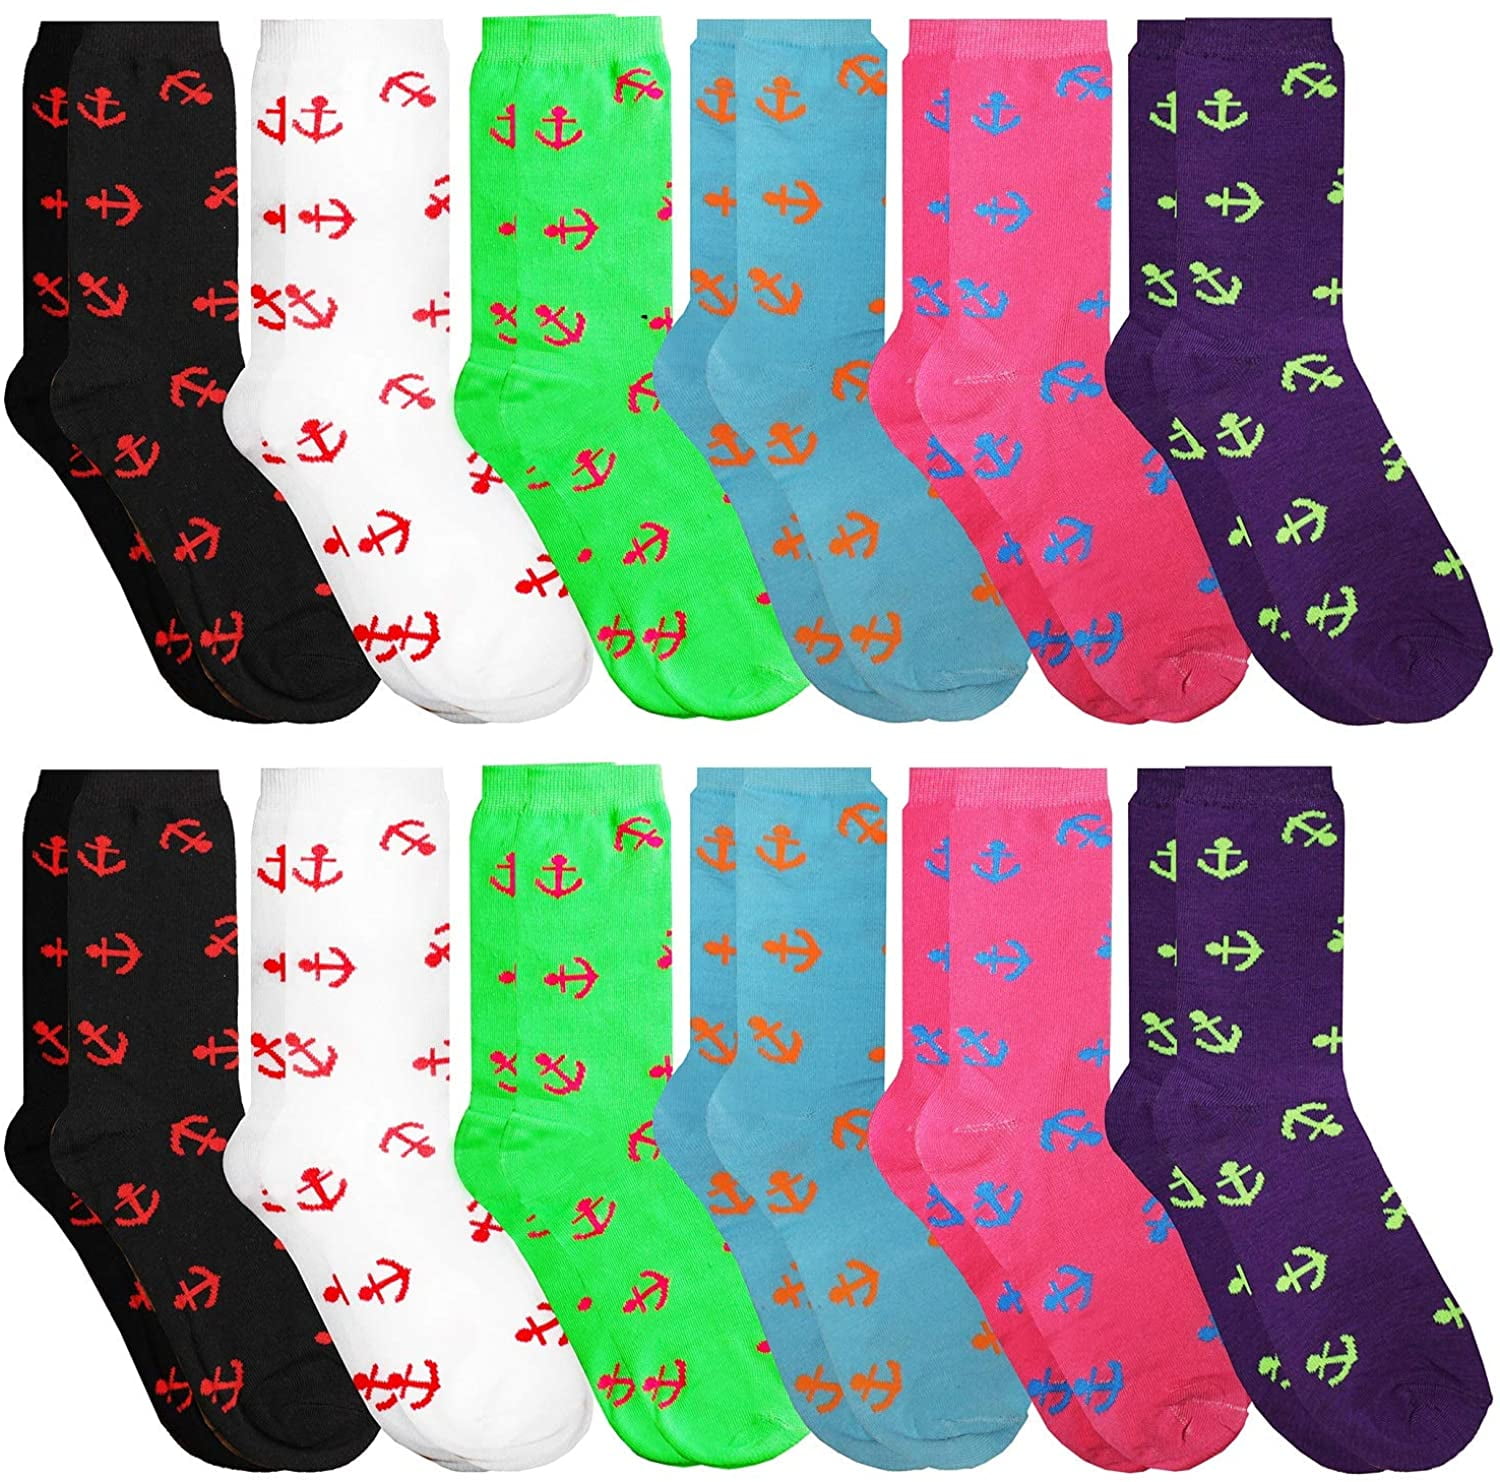 Casual Socks Crew Socks Anchor Fish Printed Funny Novelty Sock Dress Socks Hosiery For Women Girls 